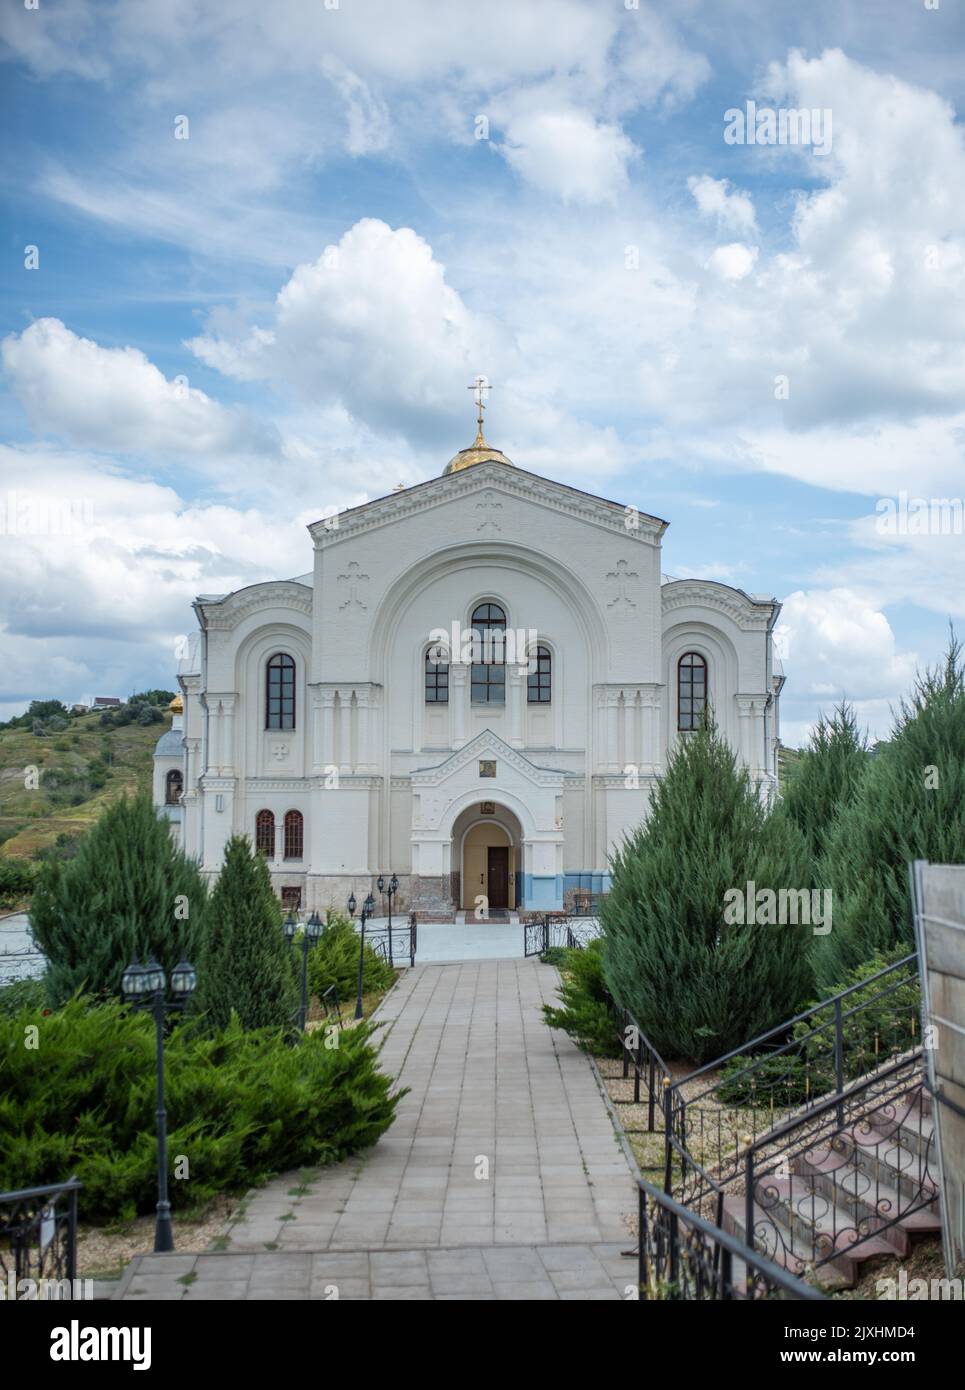 beautiful bright church in volgograd. Stock Photo